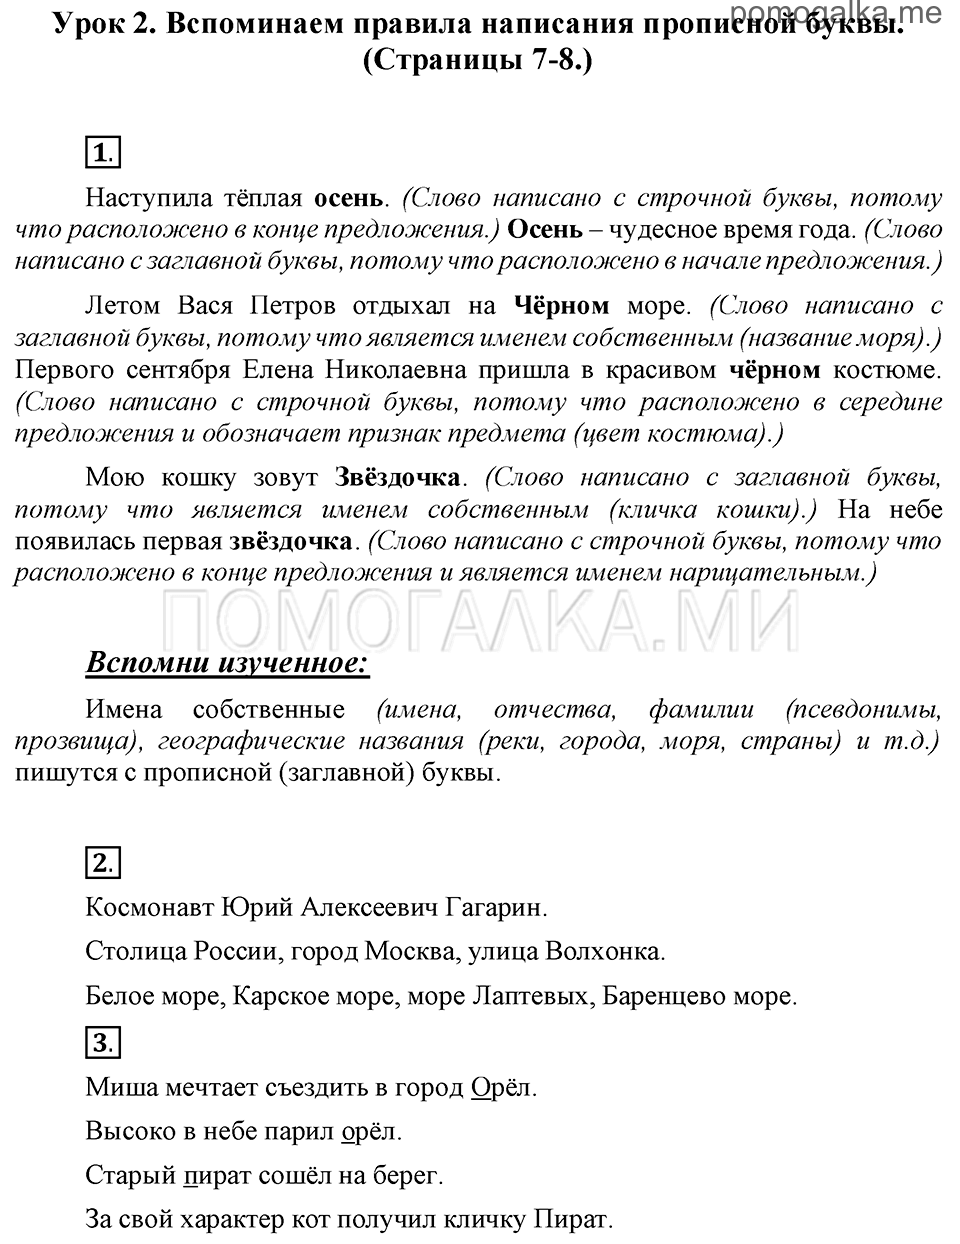 часть 1 страницы 7-8 урок 2 русский язык 3 класс Иванов, Евдокимова, Кузнецова